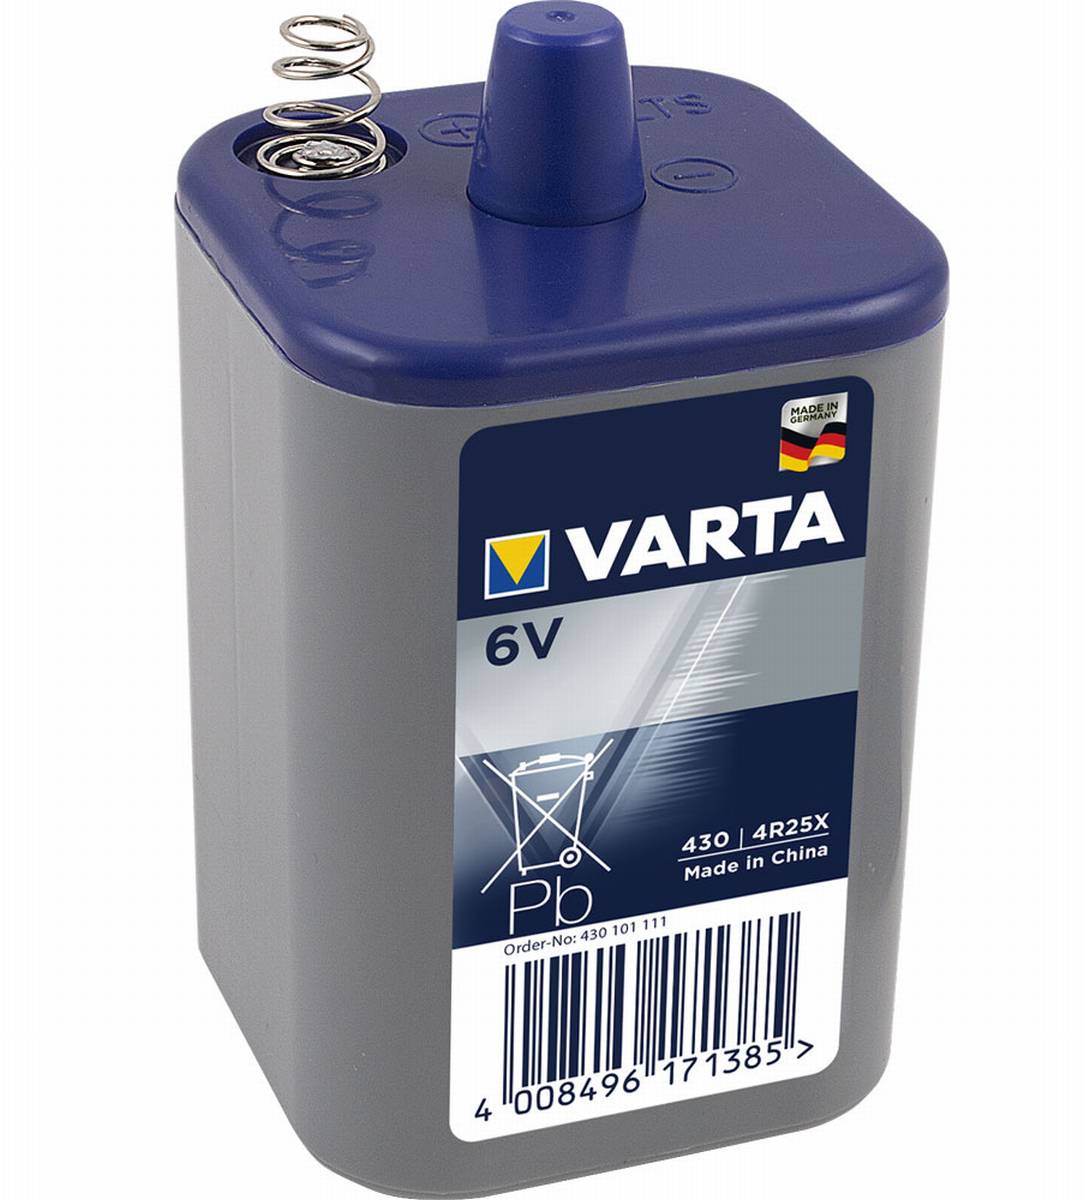 Varta Professional 430 4R25X 6V Blockbatterie Licht 7,5Ah Zink-Kohle (lose), Spezialbatterien, Akku & Batterien